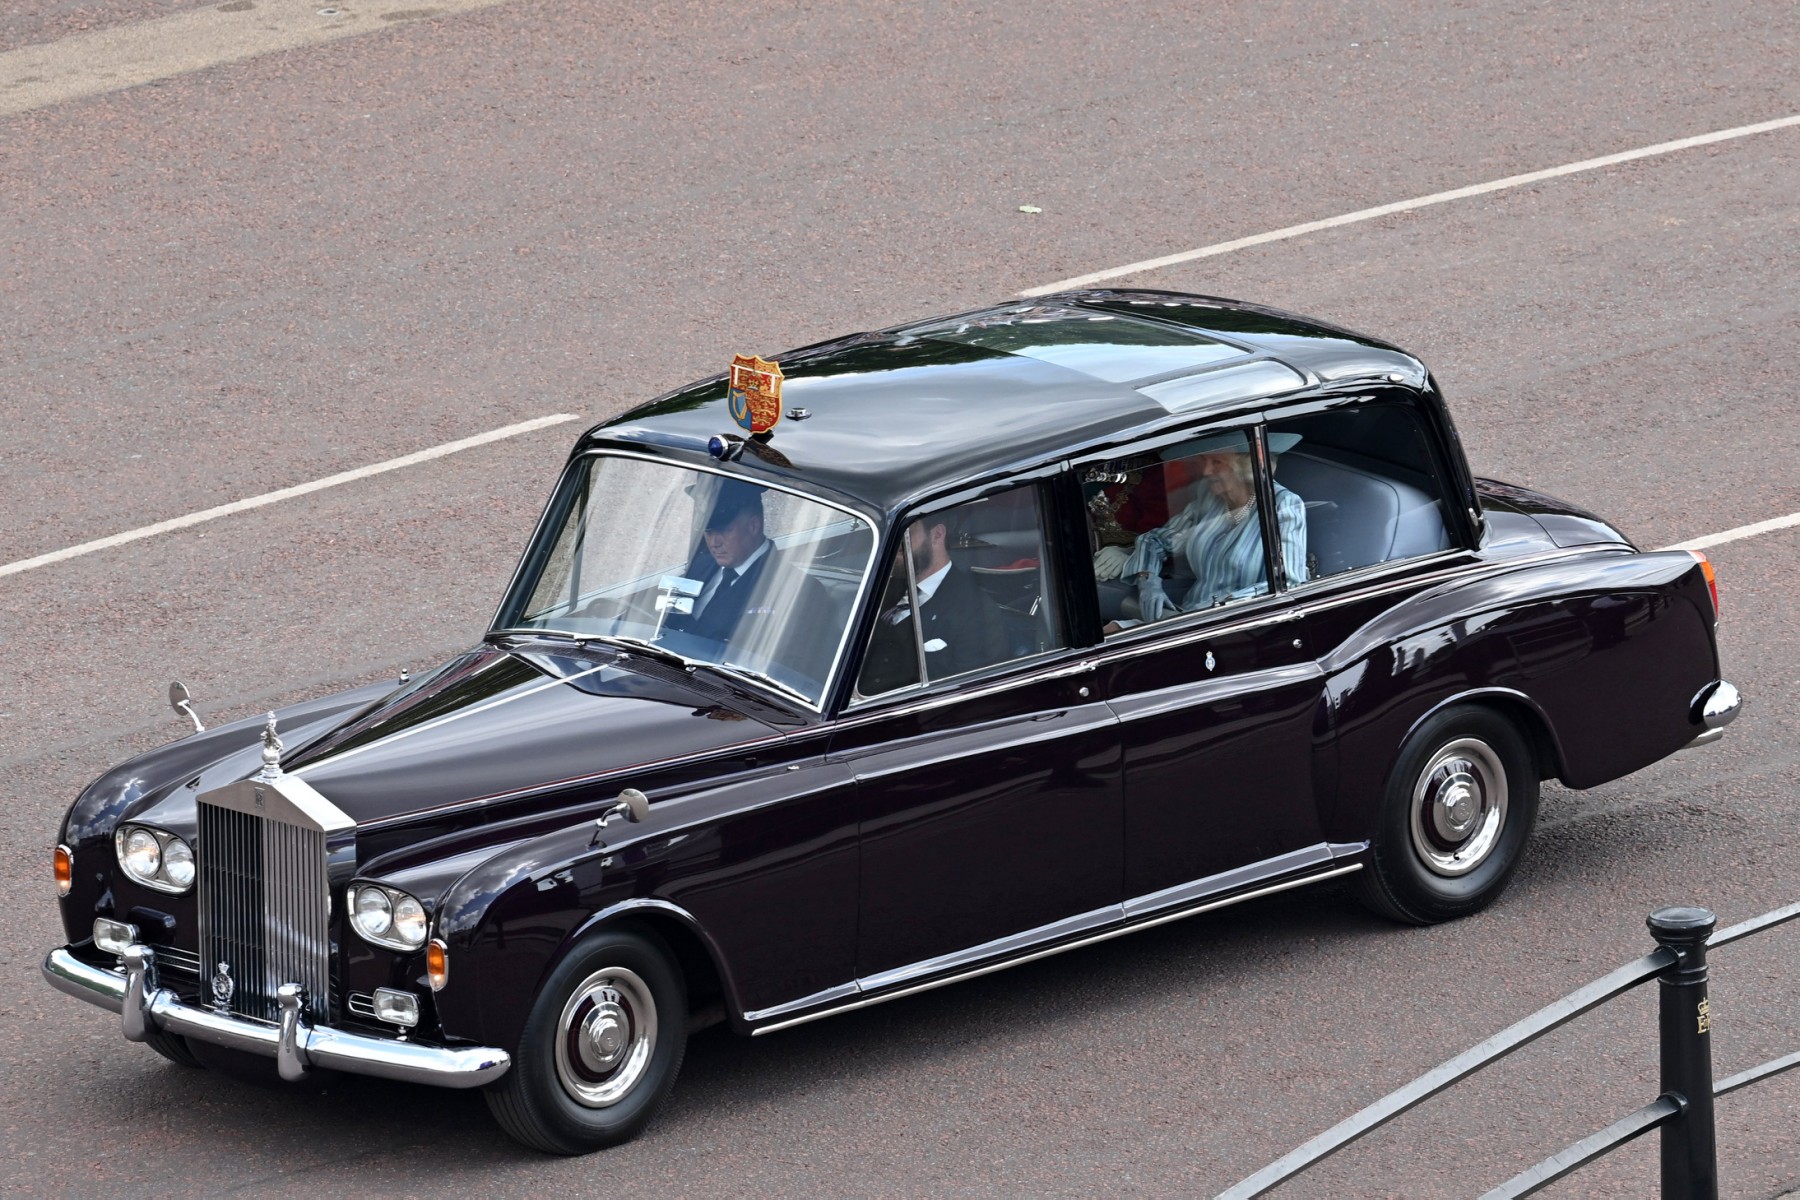 La duchesse de Cornouailles, Camilla, est vue à l'arrière d'une voiture le long du centre commercial avant que les célébrations du jubilé de platine de la reine Elizabeth II commencent à Londres, le 2 juin 2022 (Photo, AFP).